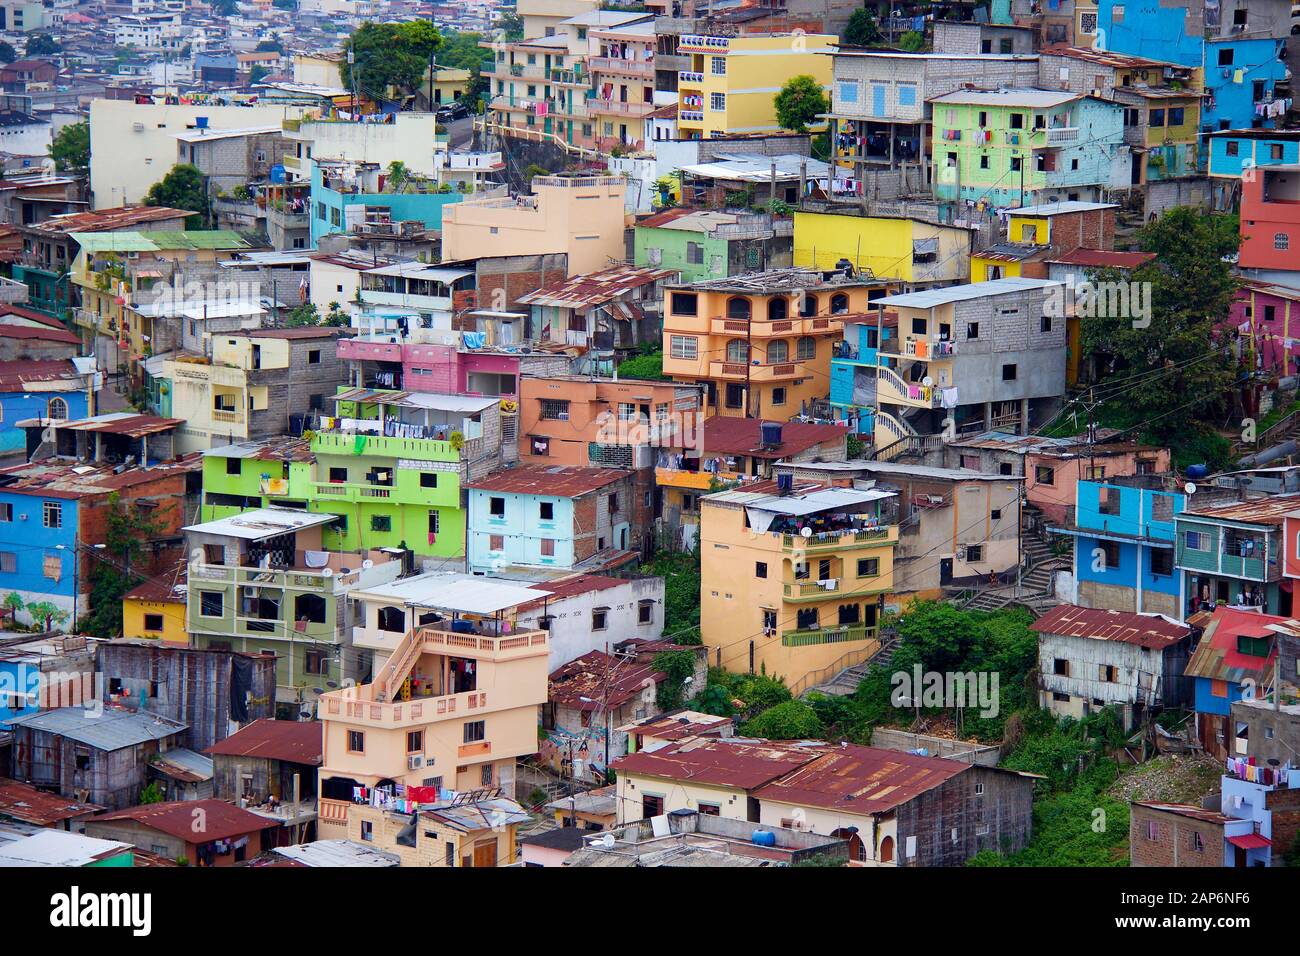 Maisons colorées sur une colline dans un taudis à Guayaquil, en Équateur Banque D'Images